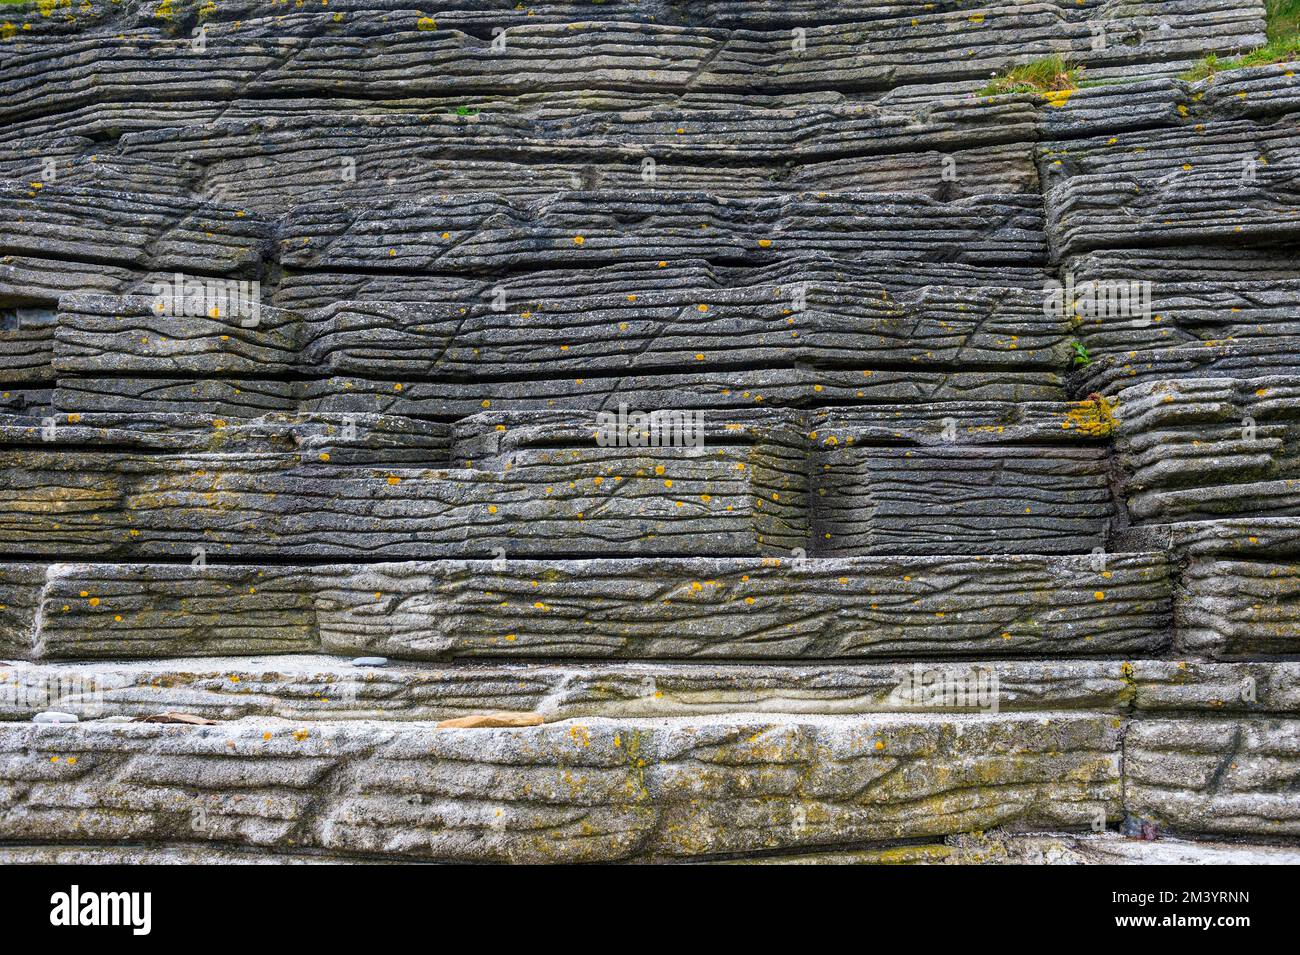 Formación rocosa en el Brough de Birsay, Islas Orcadas, Reino Unido Foto de stock